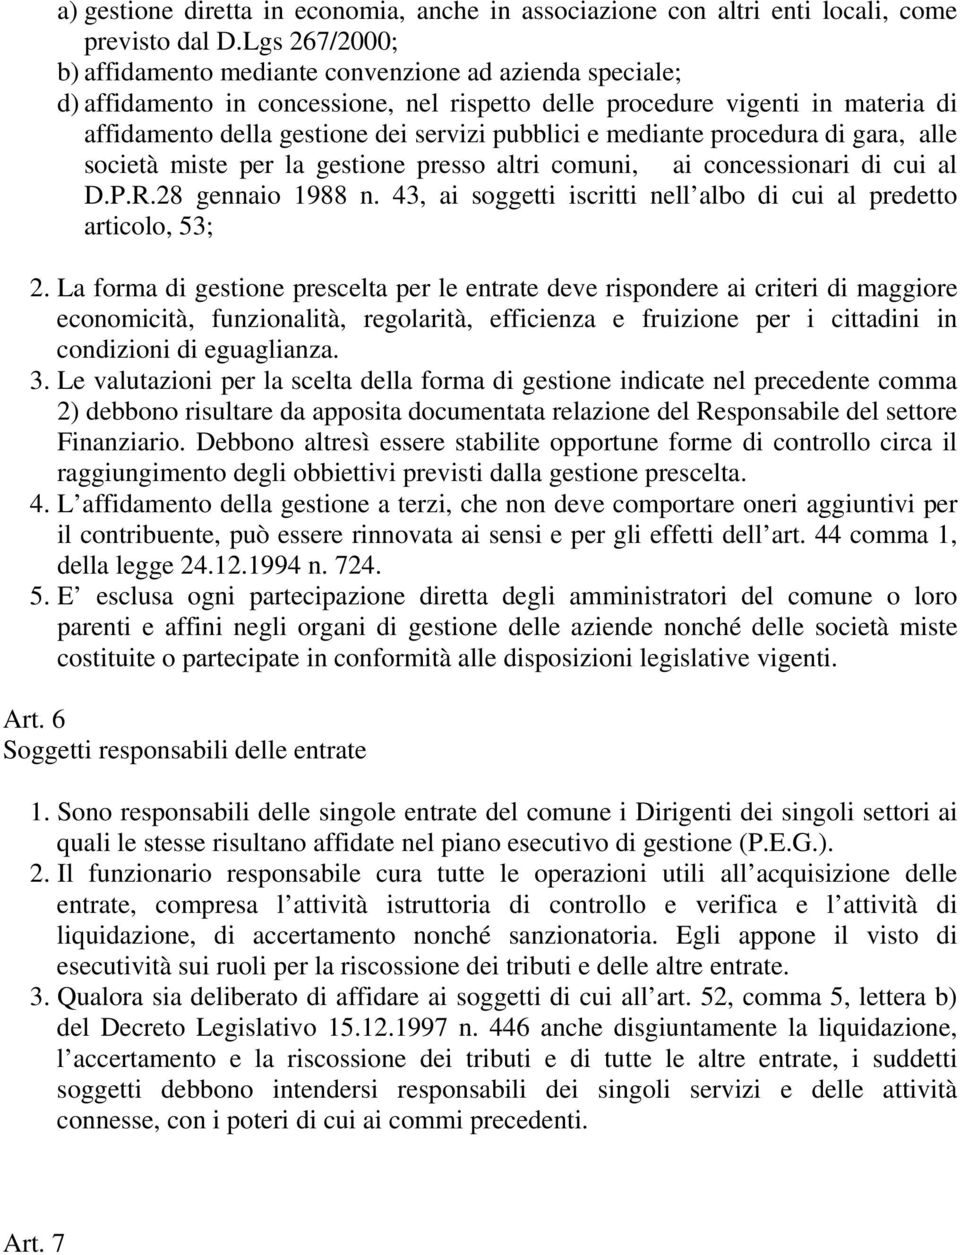 pubblici e mediante procedura di gara, alle società miste per la gestione presso altri comuni, ai concessionari di cui al D.P.R.28 gennaio 1988 n.